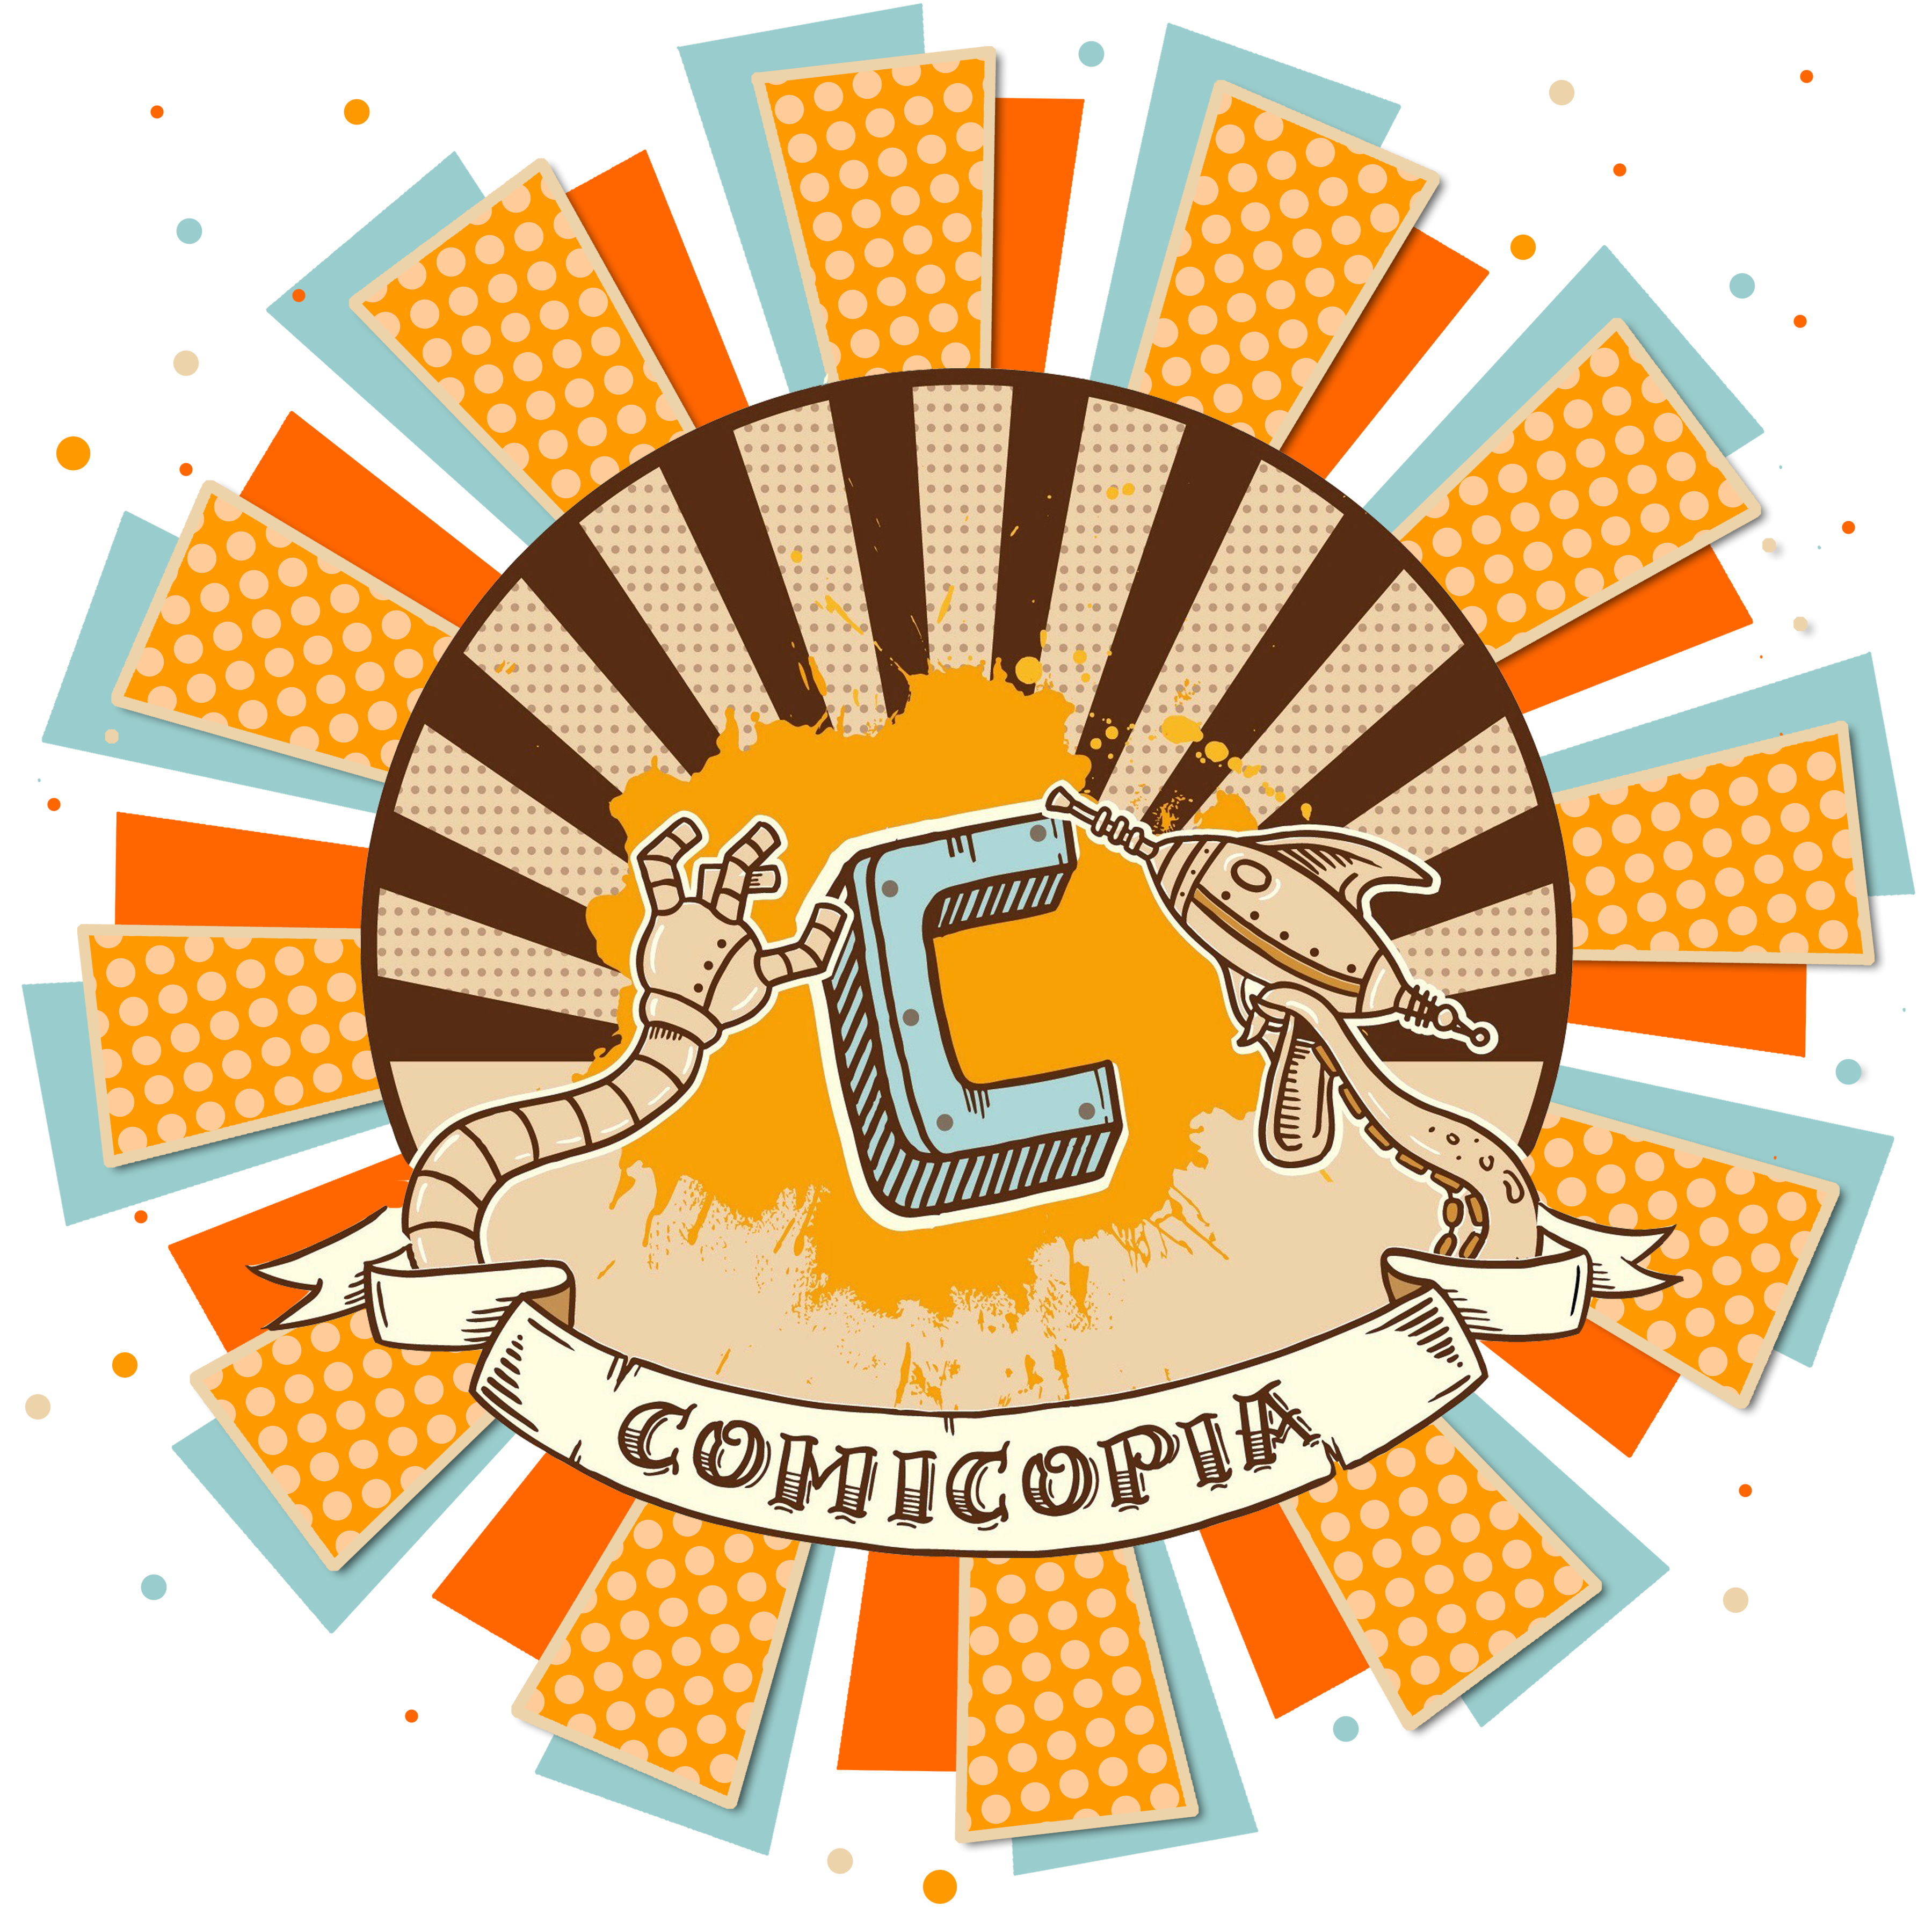 Comicopia